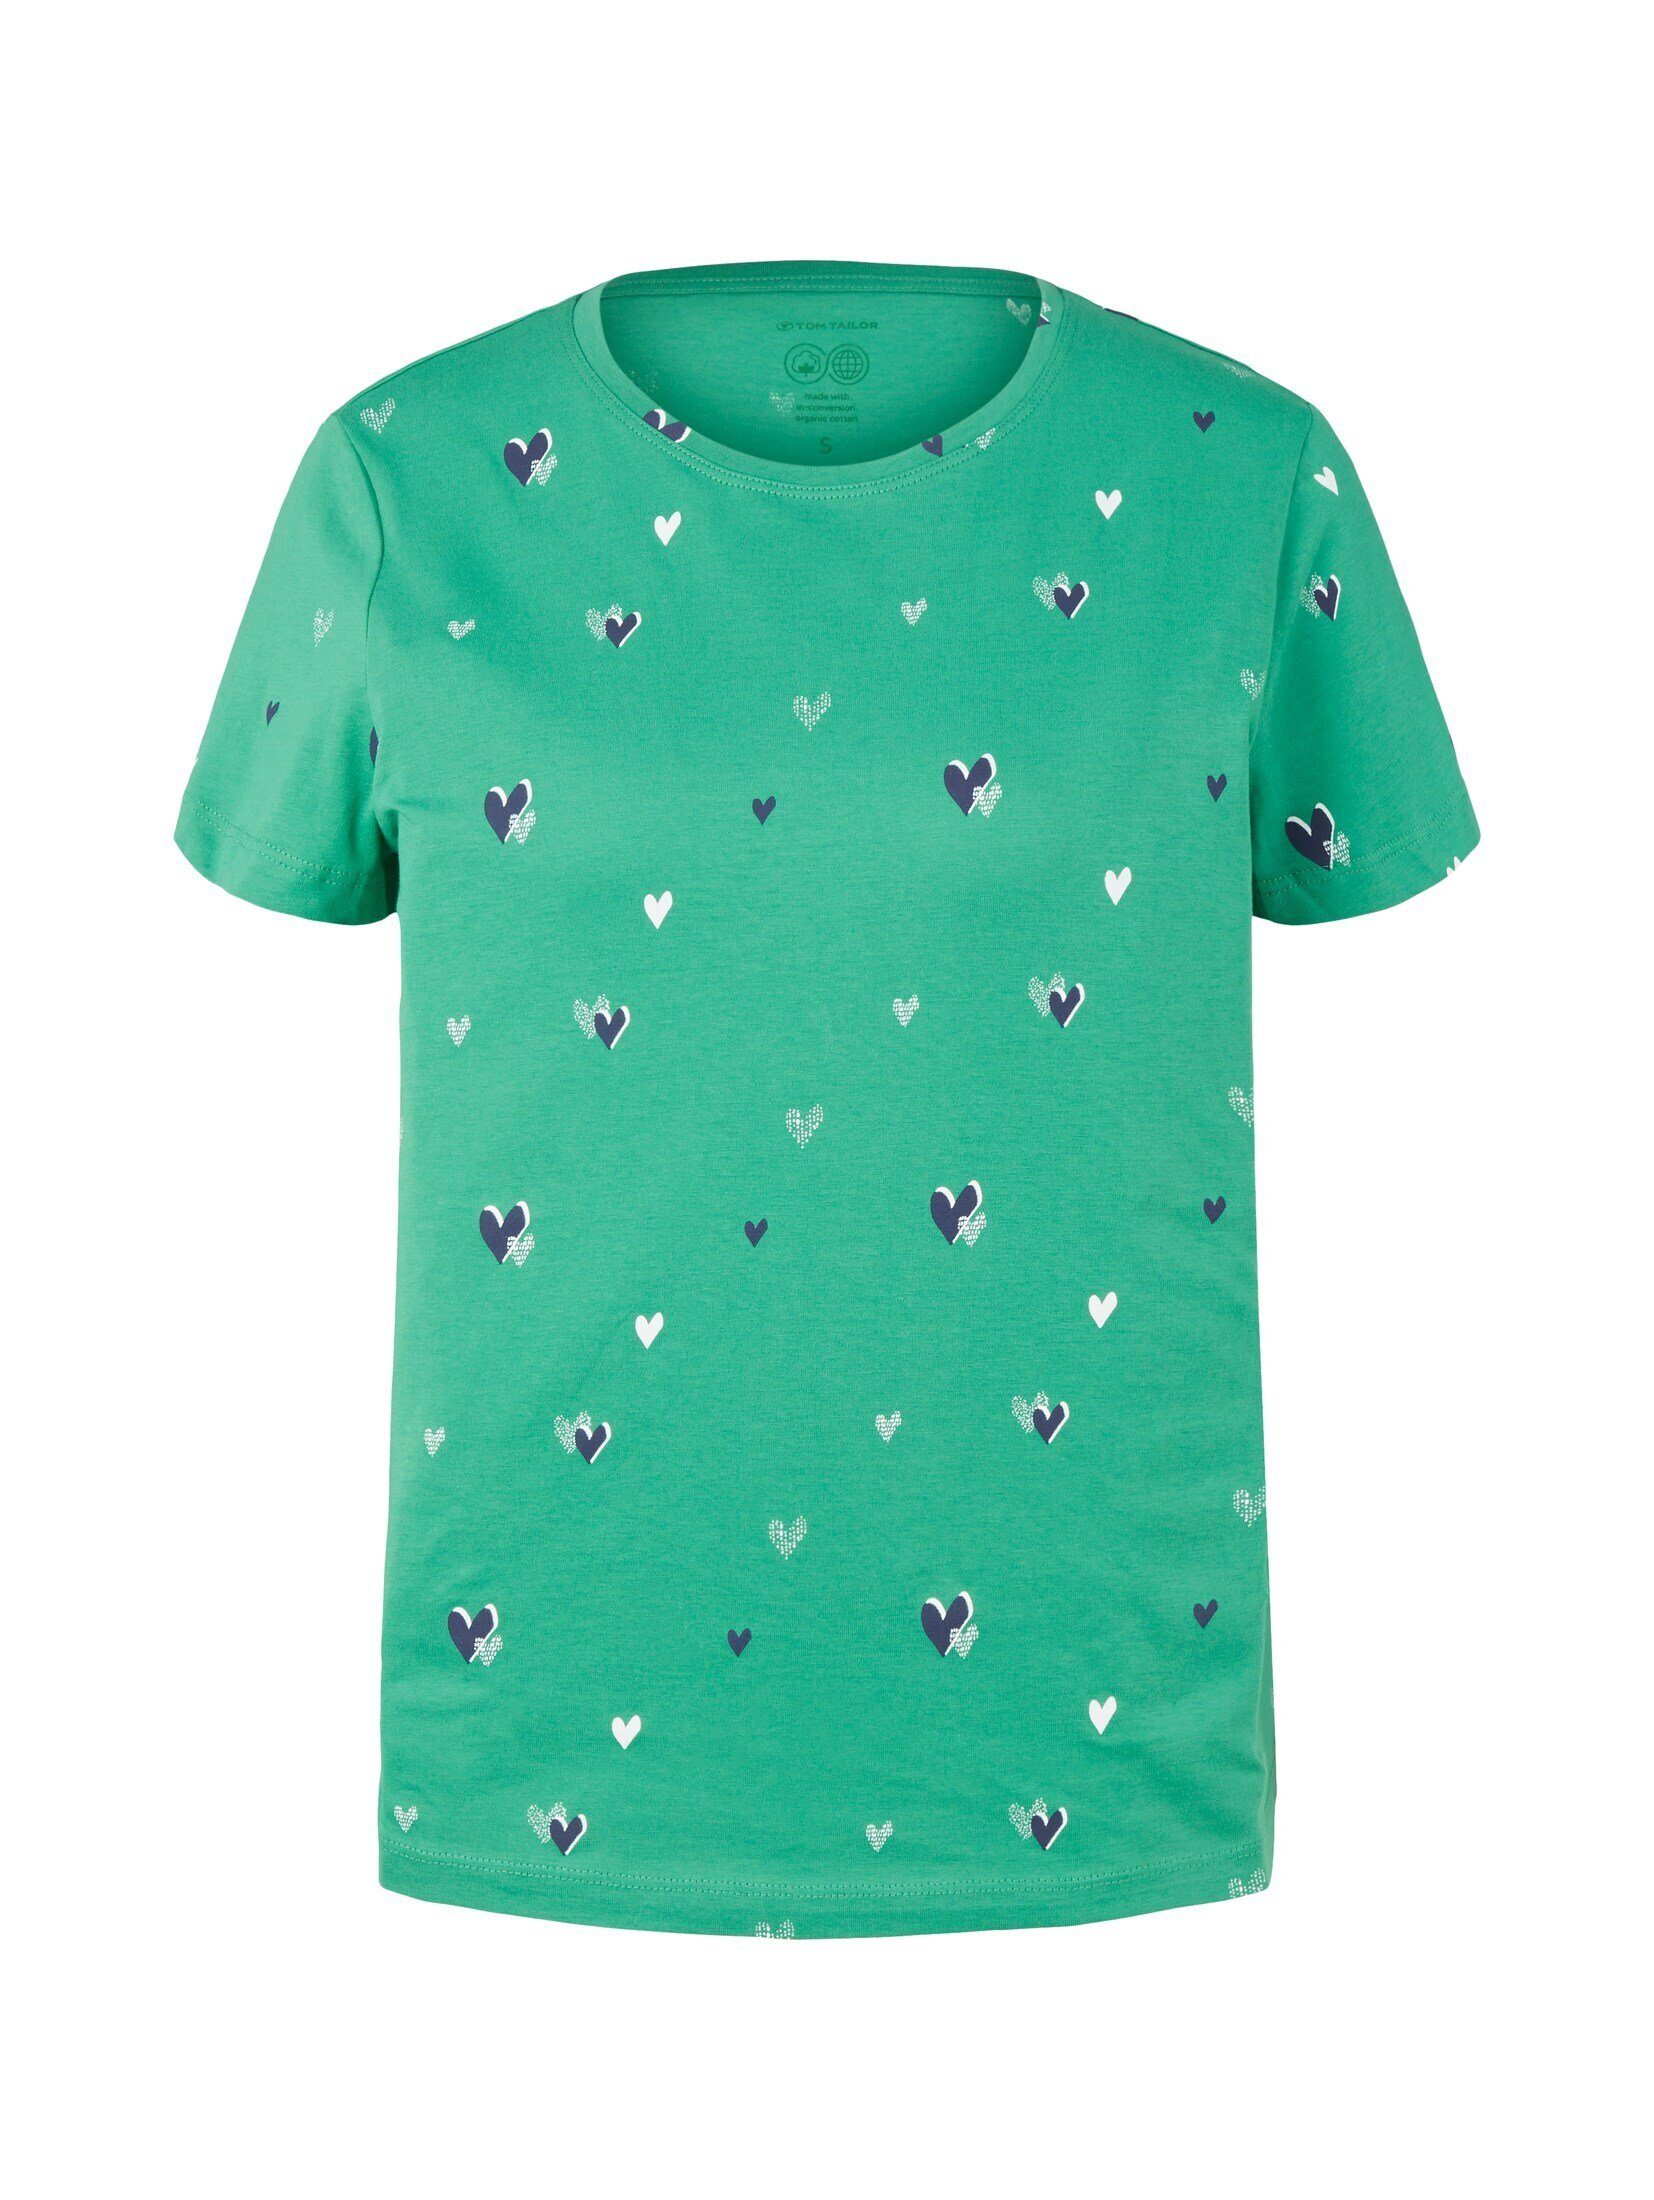 green T-Shirt T-Shirt Print navy heart TOM design TAILOR mit